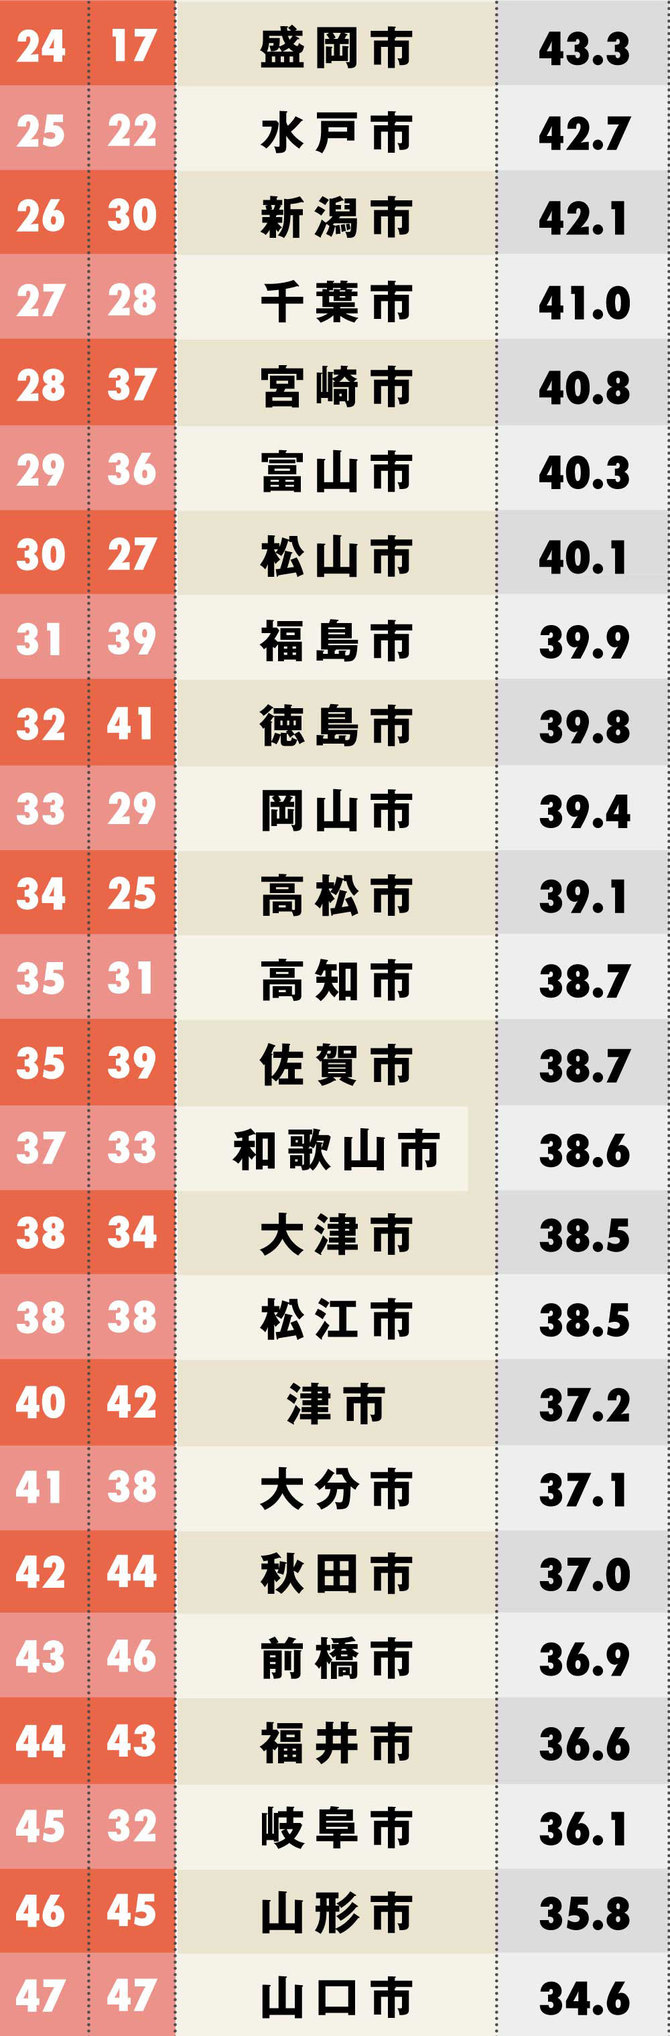 47都道府県の県庁所在地 認知度 ランキング 完全版 日本全国ご当地ランキング ダイヤモンド オンライン